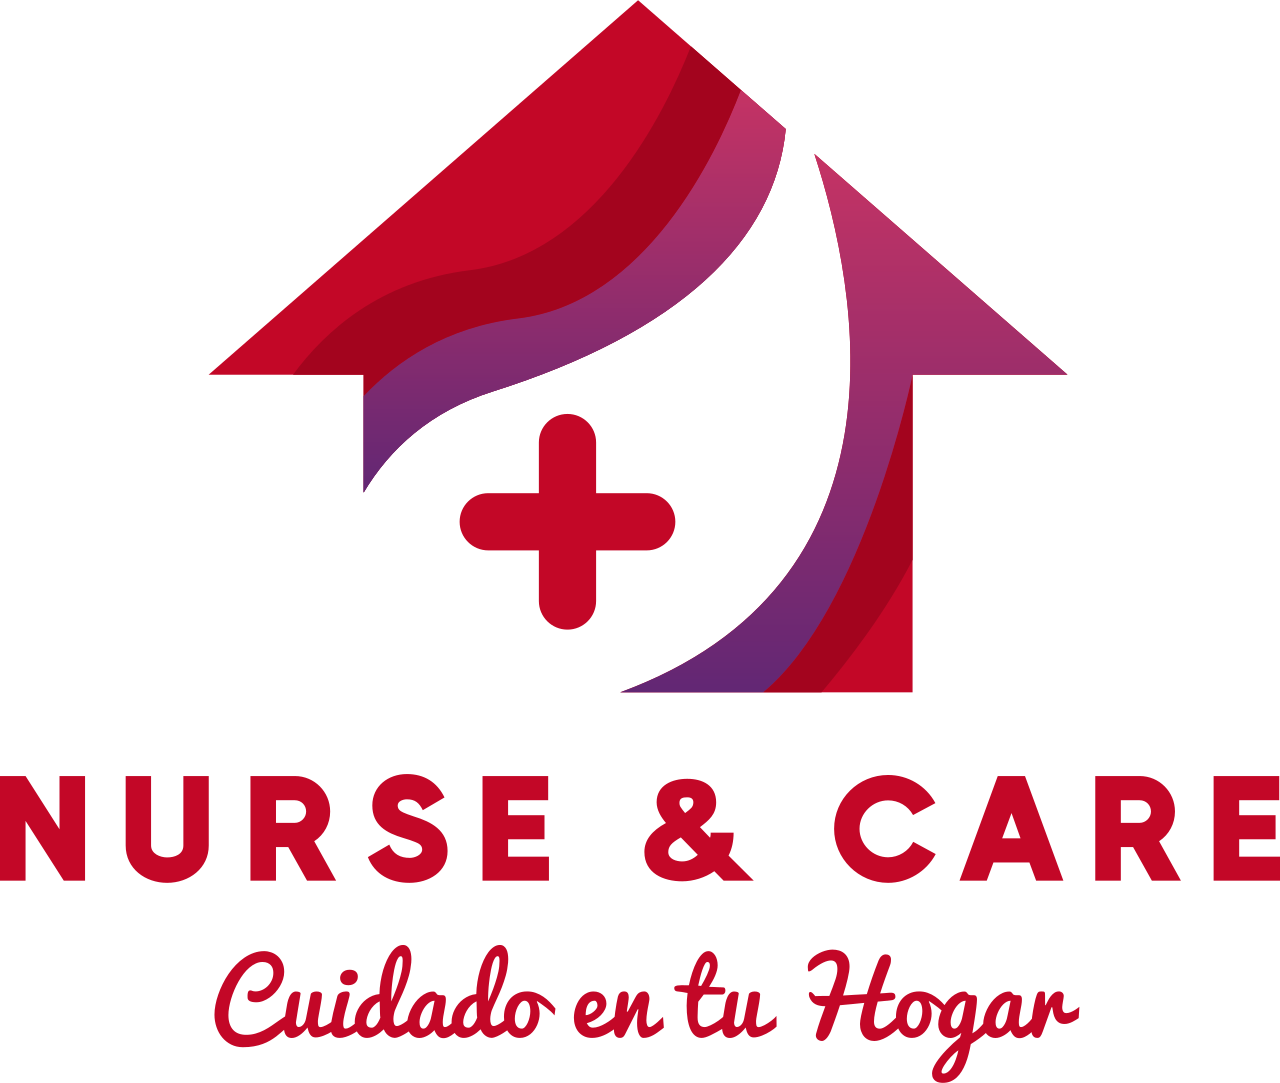 Nurse & Care's logo